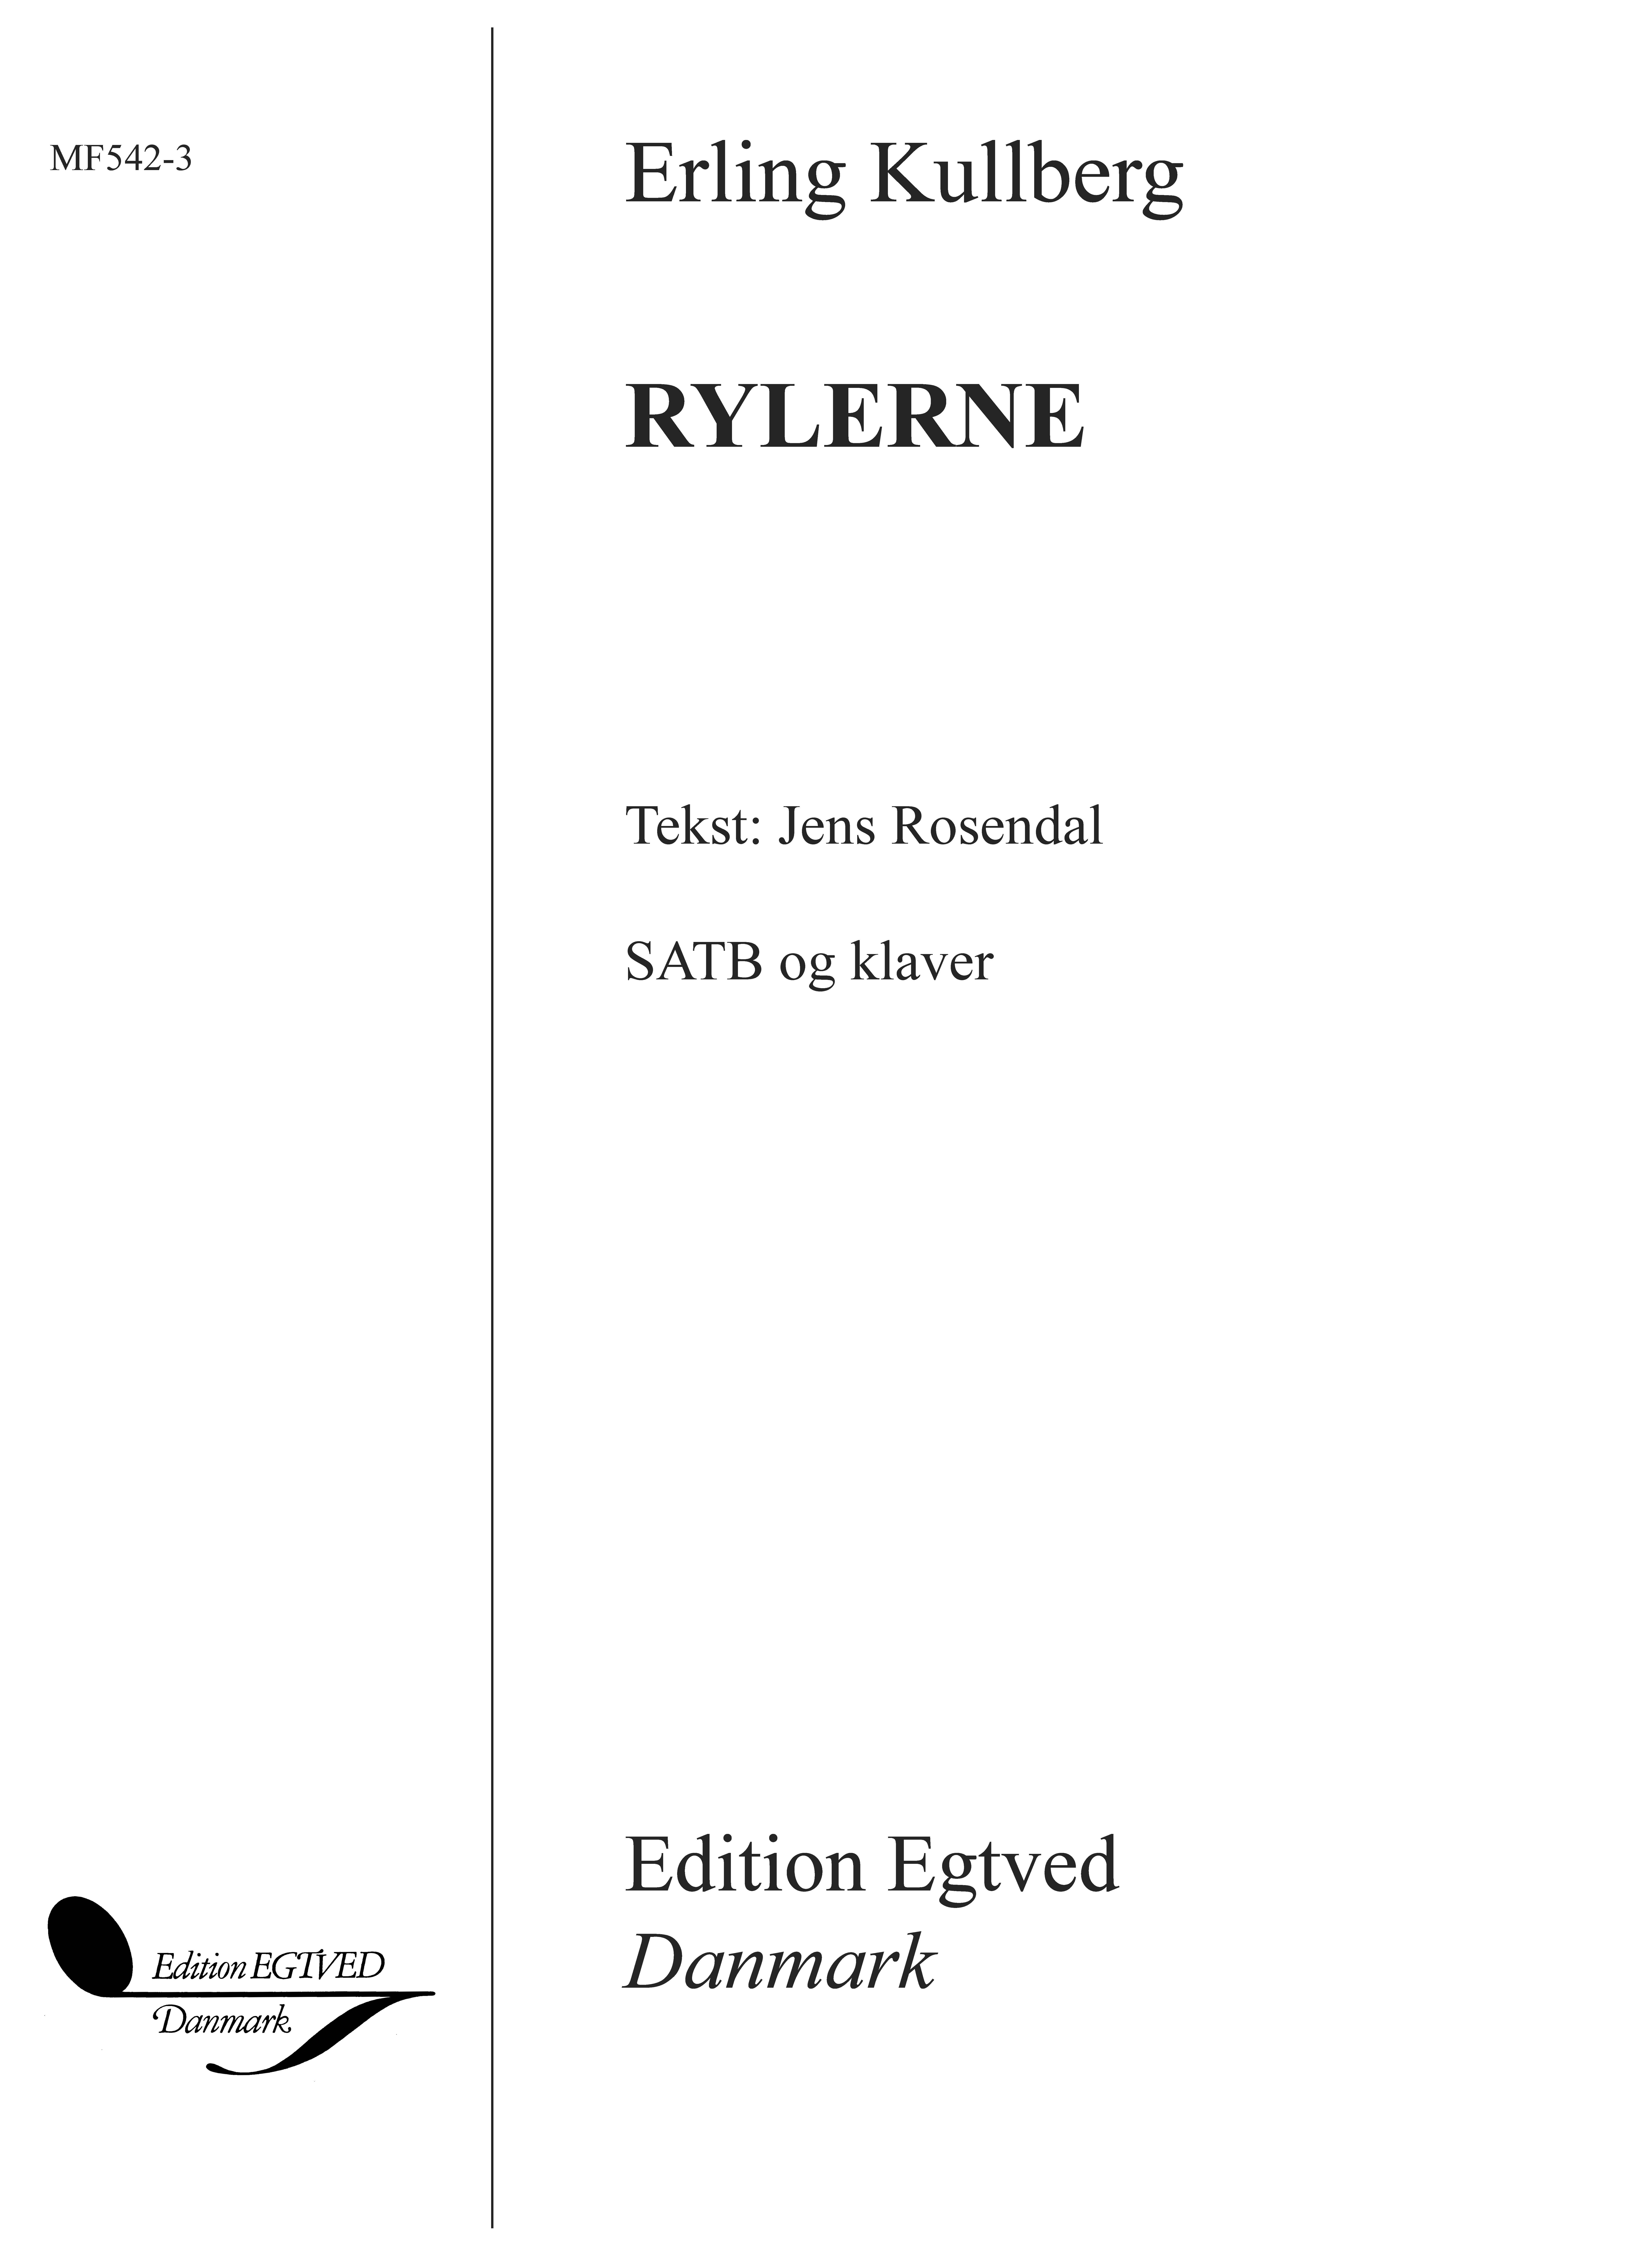 Erling Kullberg: Rylerne: SATB: Vocal Score